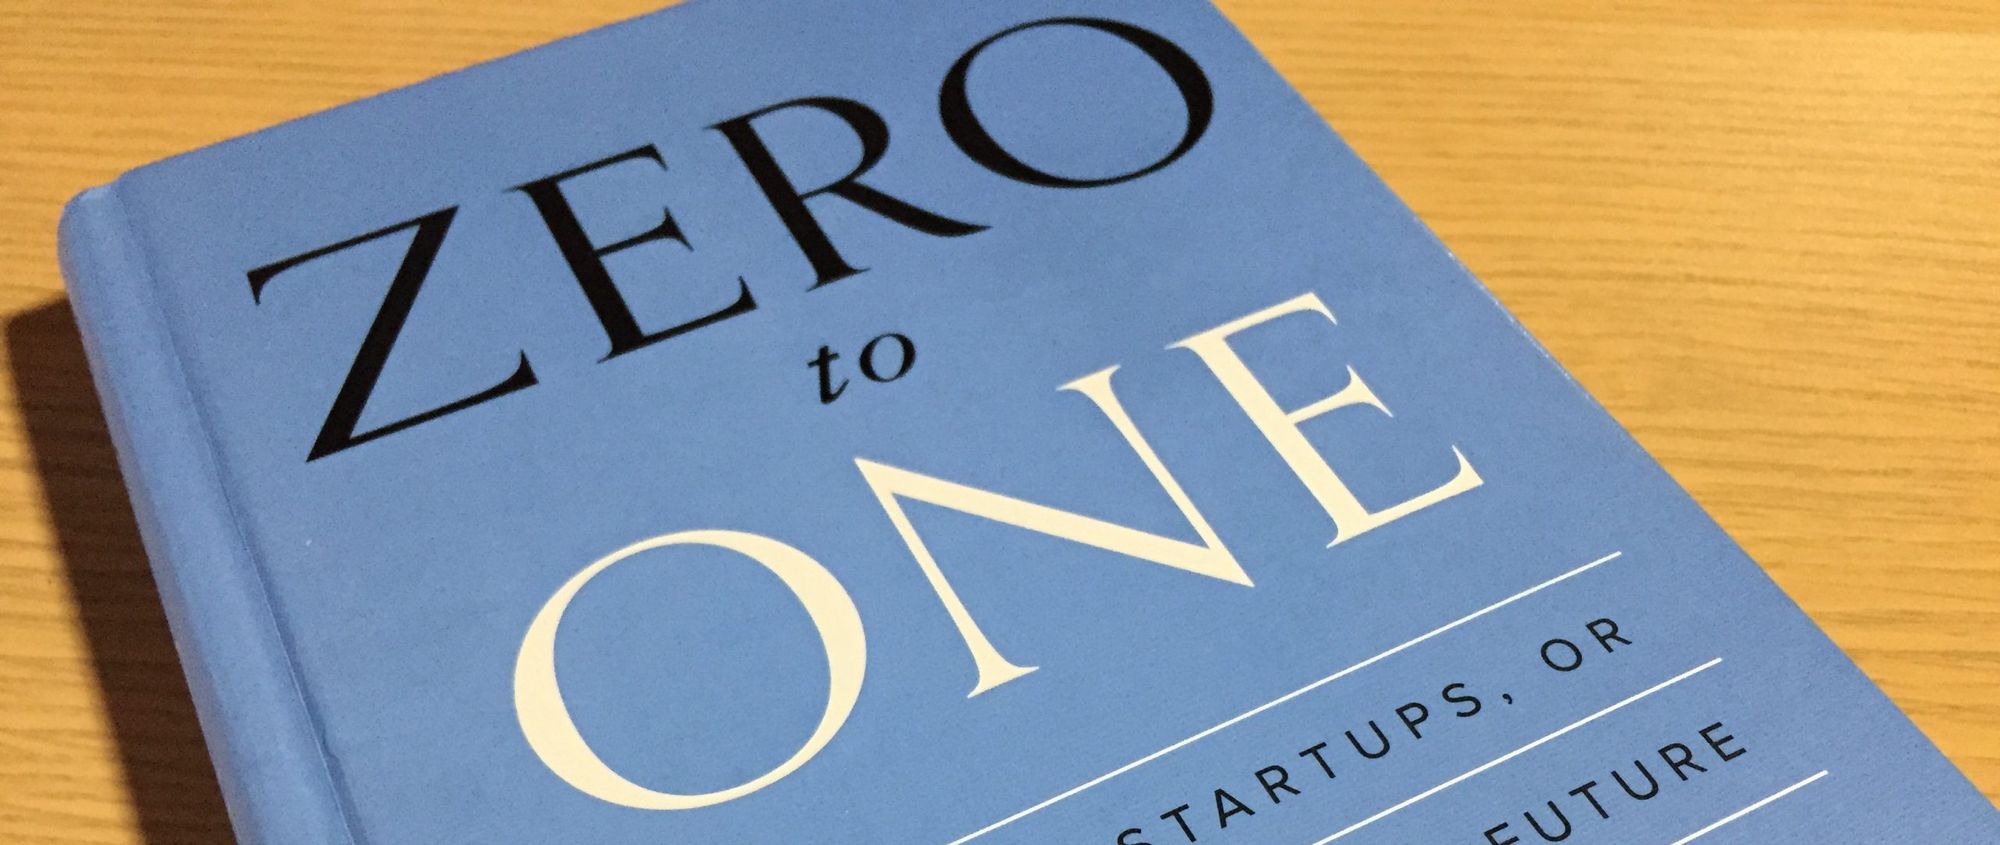 Peter Thiel & Blake Masters: Zero to One